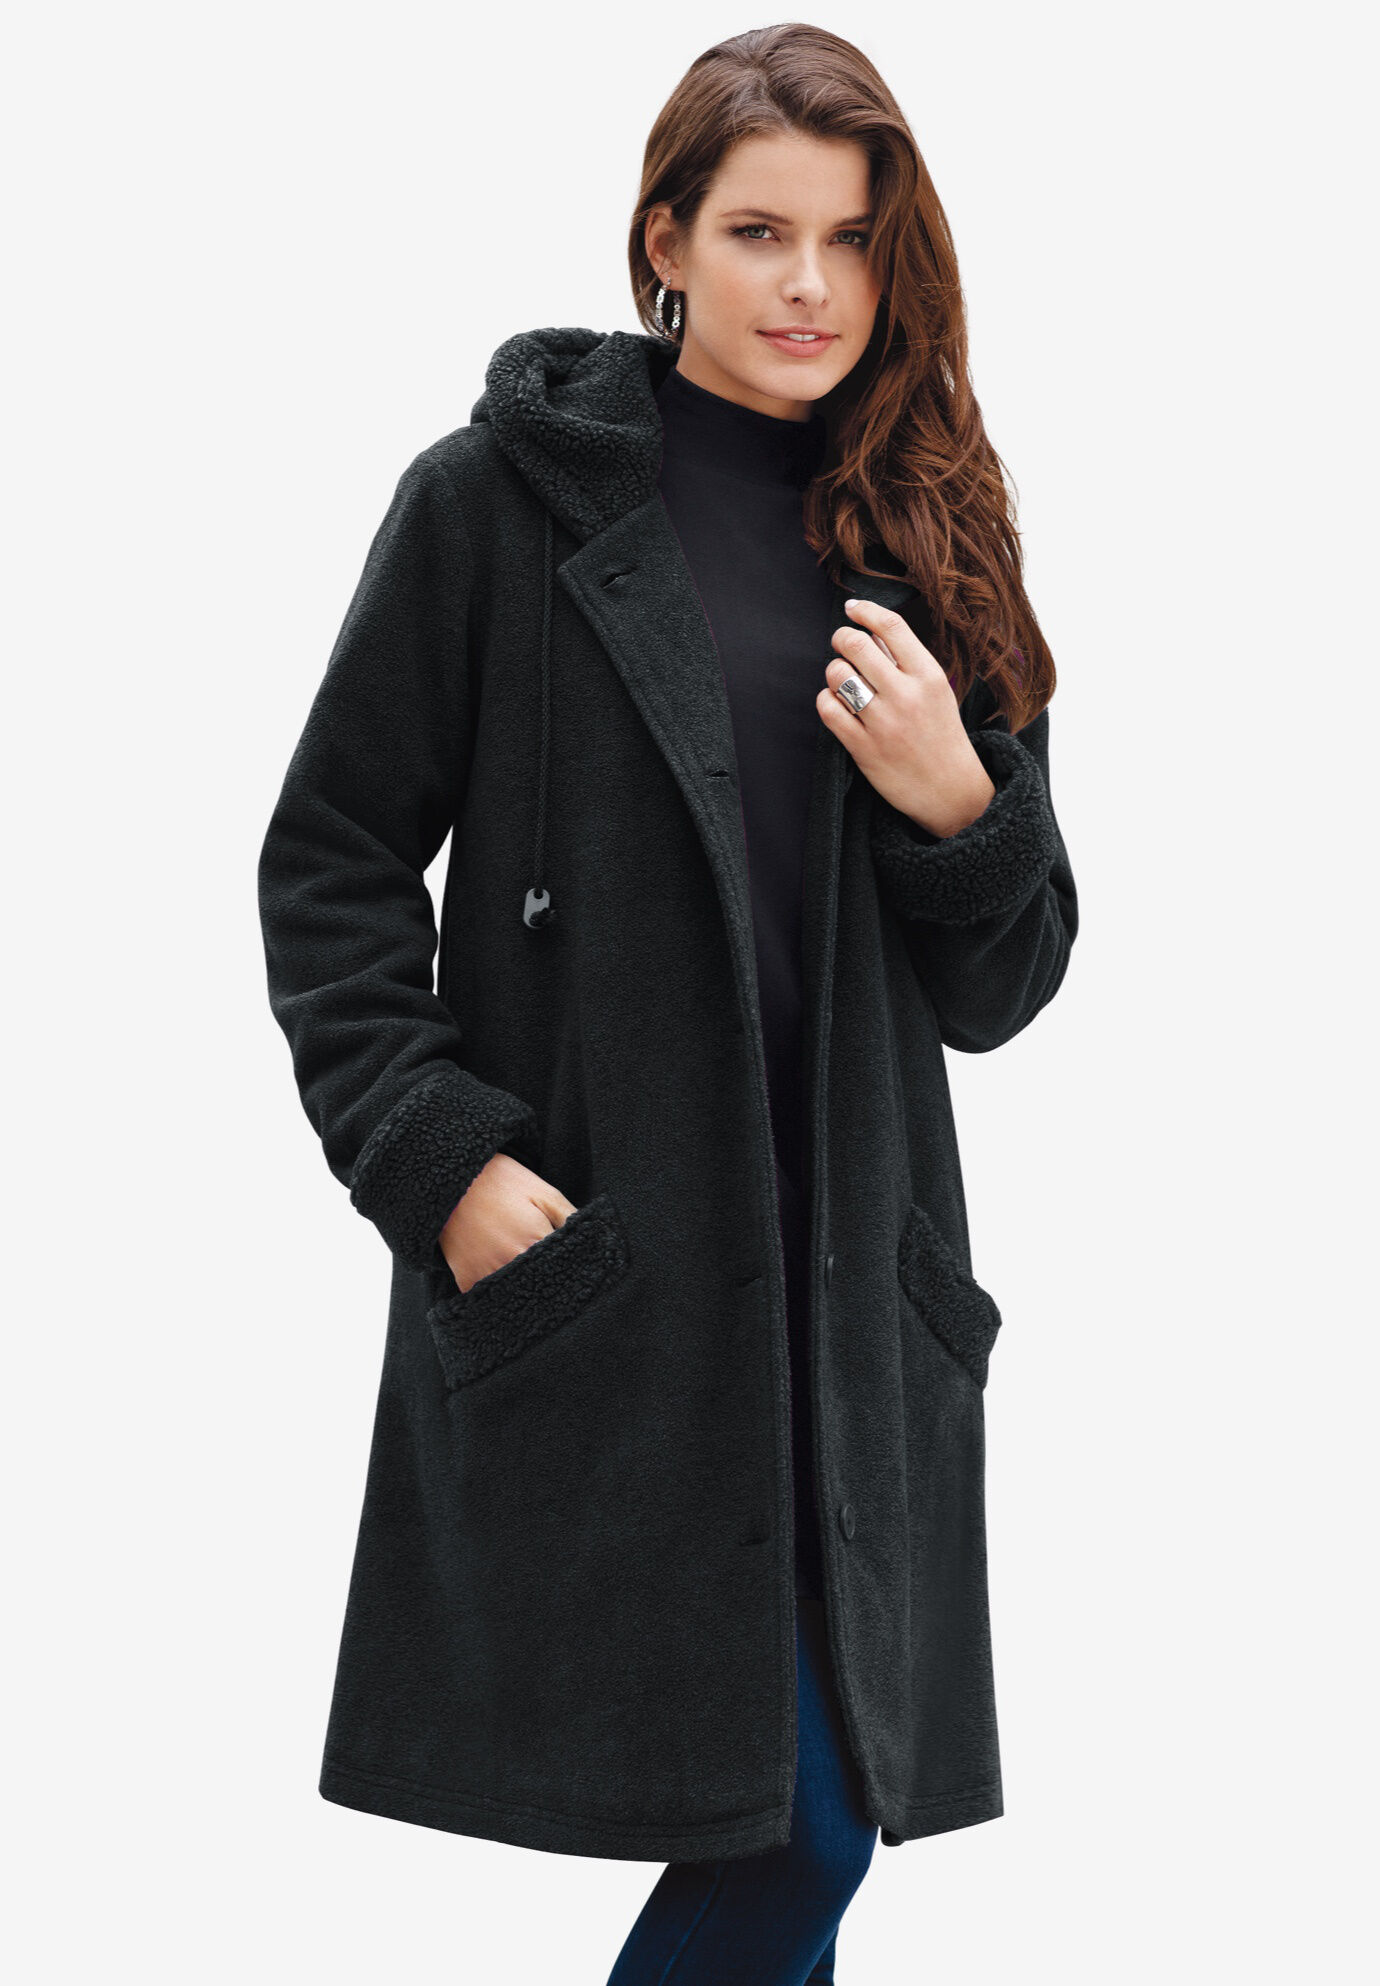 YAnGSale Top Women Woolen Coat Plus Size Outwear Warm Winter Jacket Button Plush Hooded Tops Loose Cardigan Wool Coat Blouse 